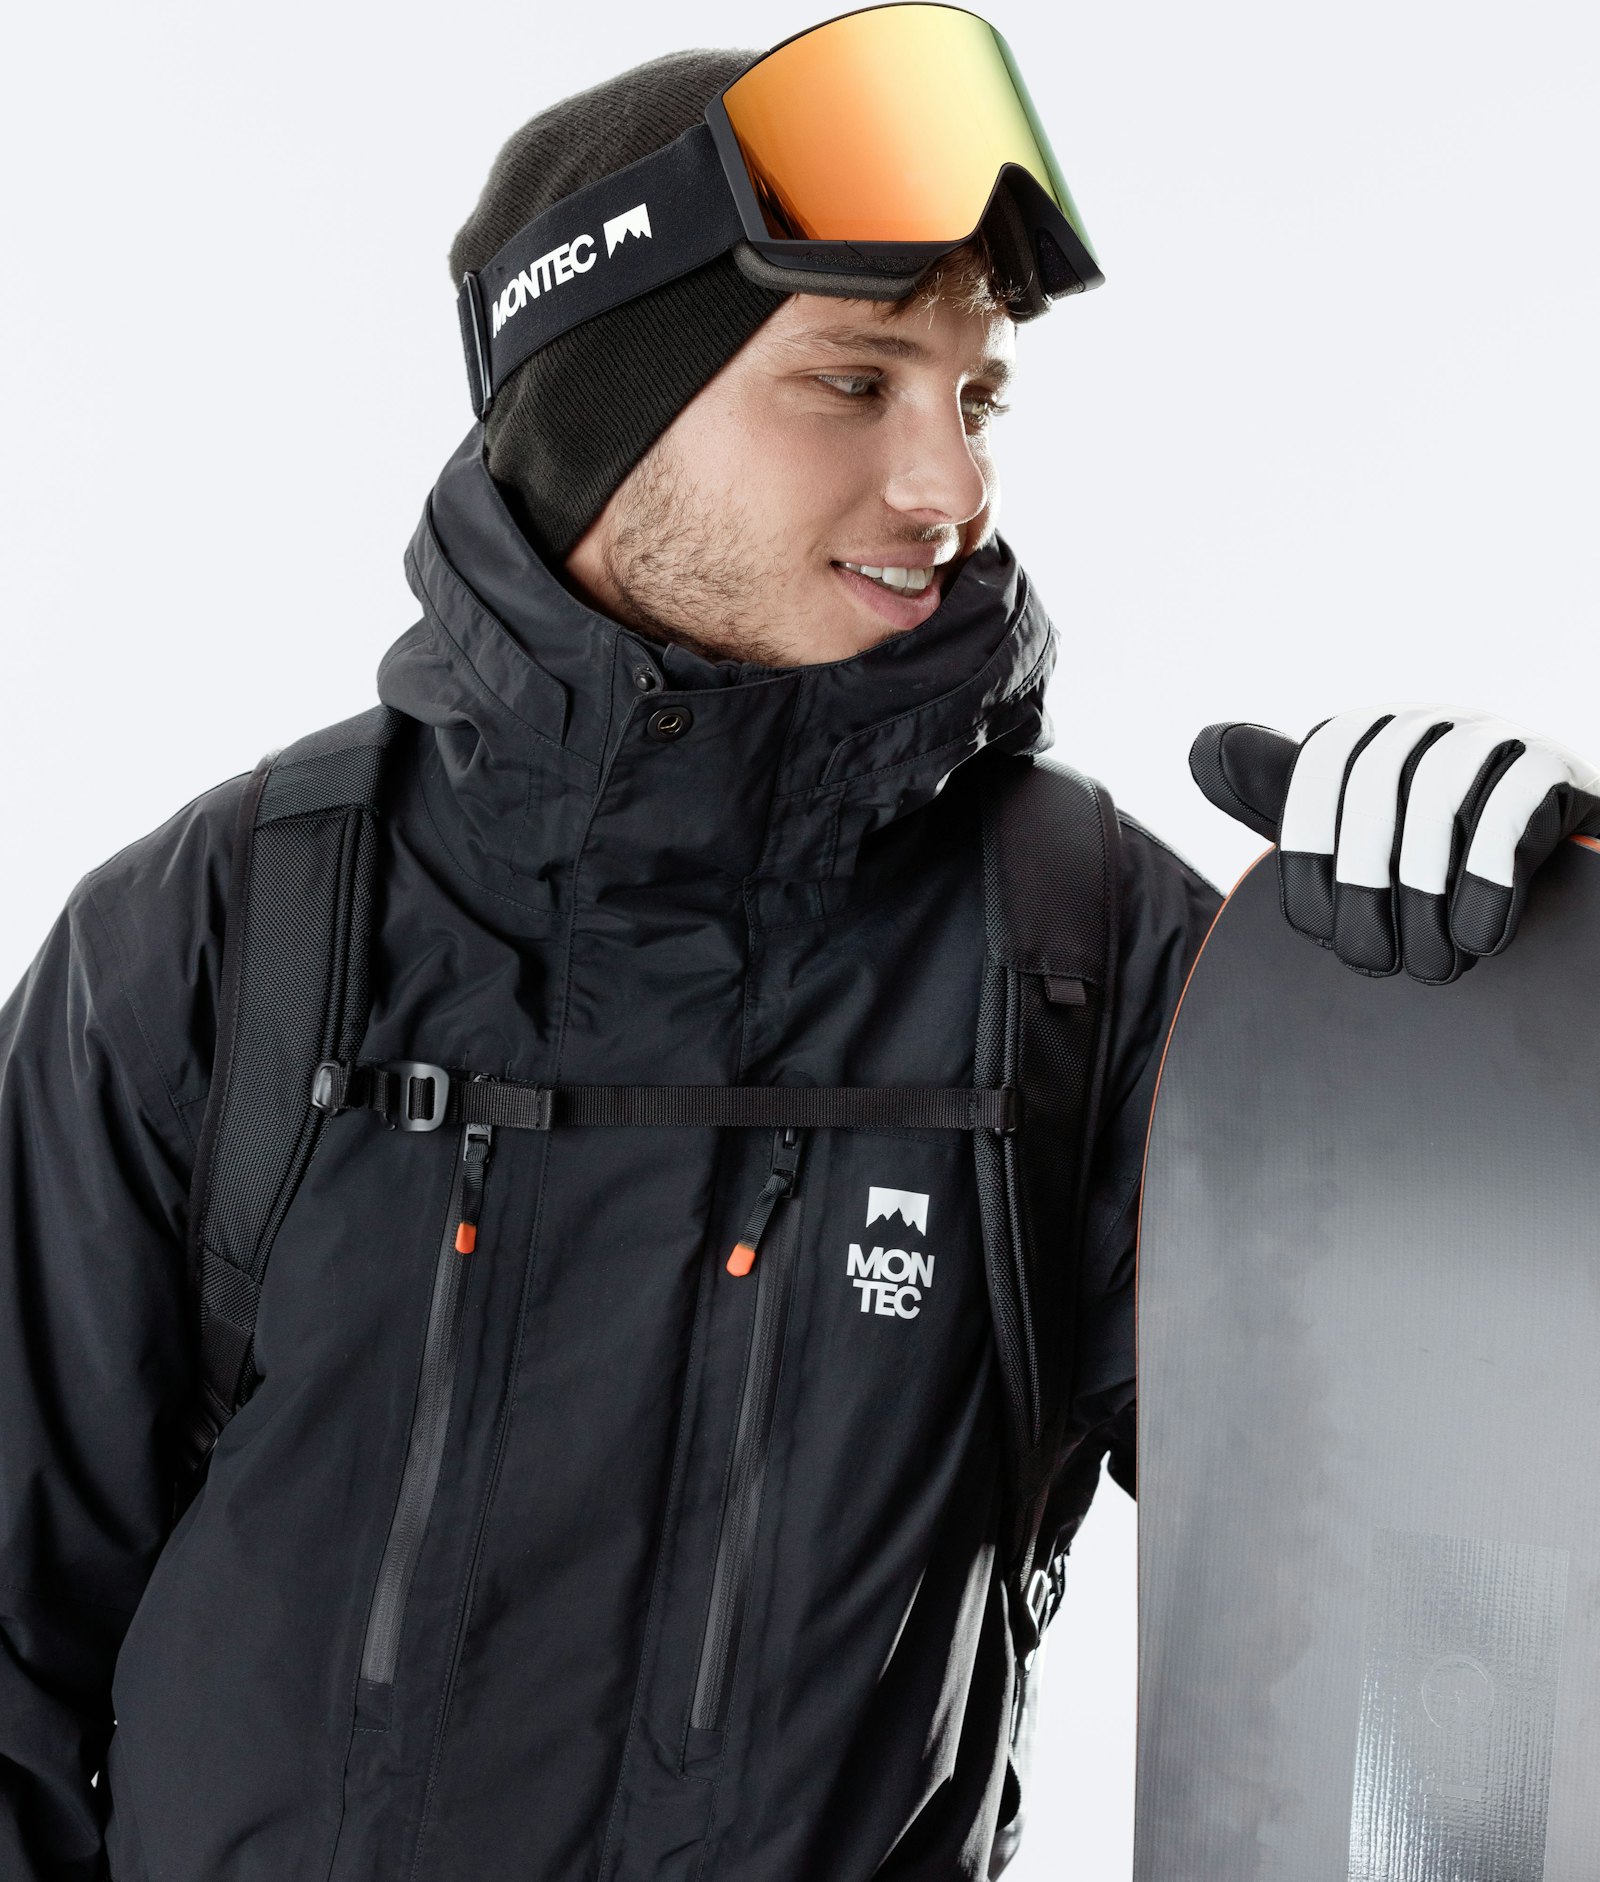 Fawk 2020 Veste Snowboard Homme Black